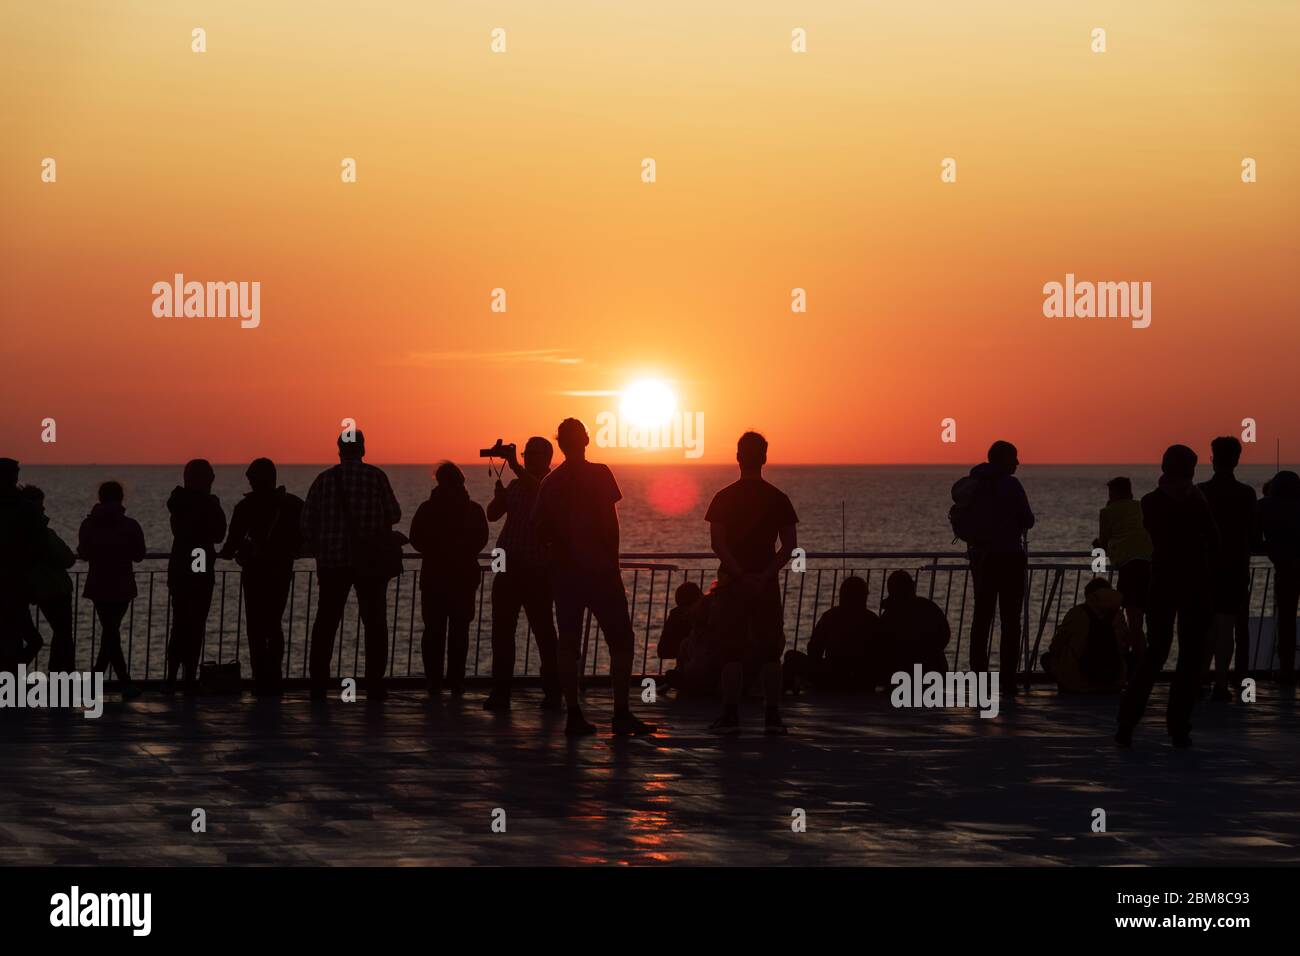 Silhouette di persone contro il tramonto sul ponte di una nave da crociera. Oceano calmo e cielo arancione chiaro in serata. Vacanze di crociera sfondo Foto Stock